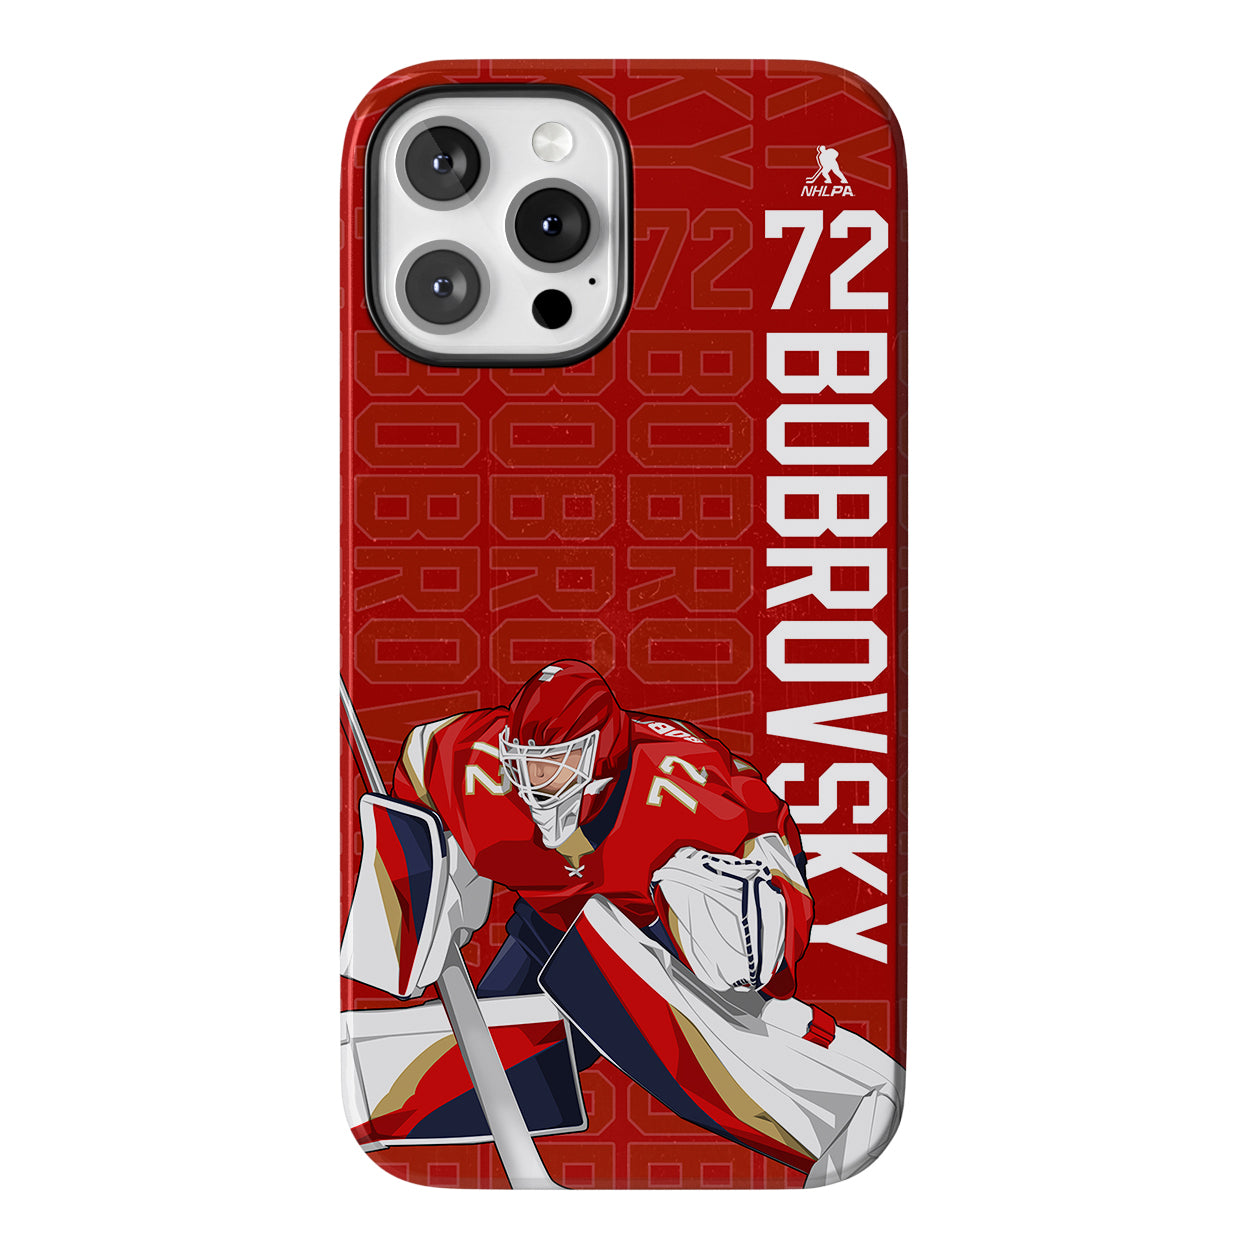 Bobrovsky Star Series 3.0 Phone Case